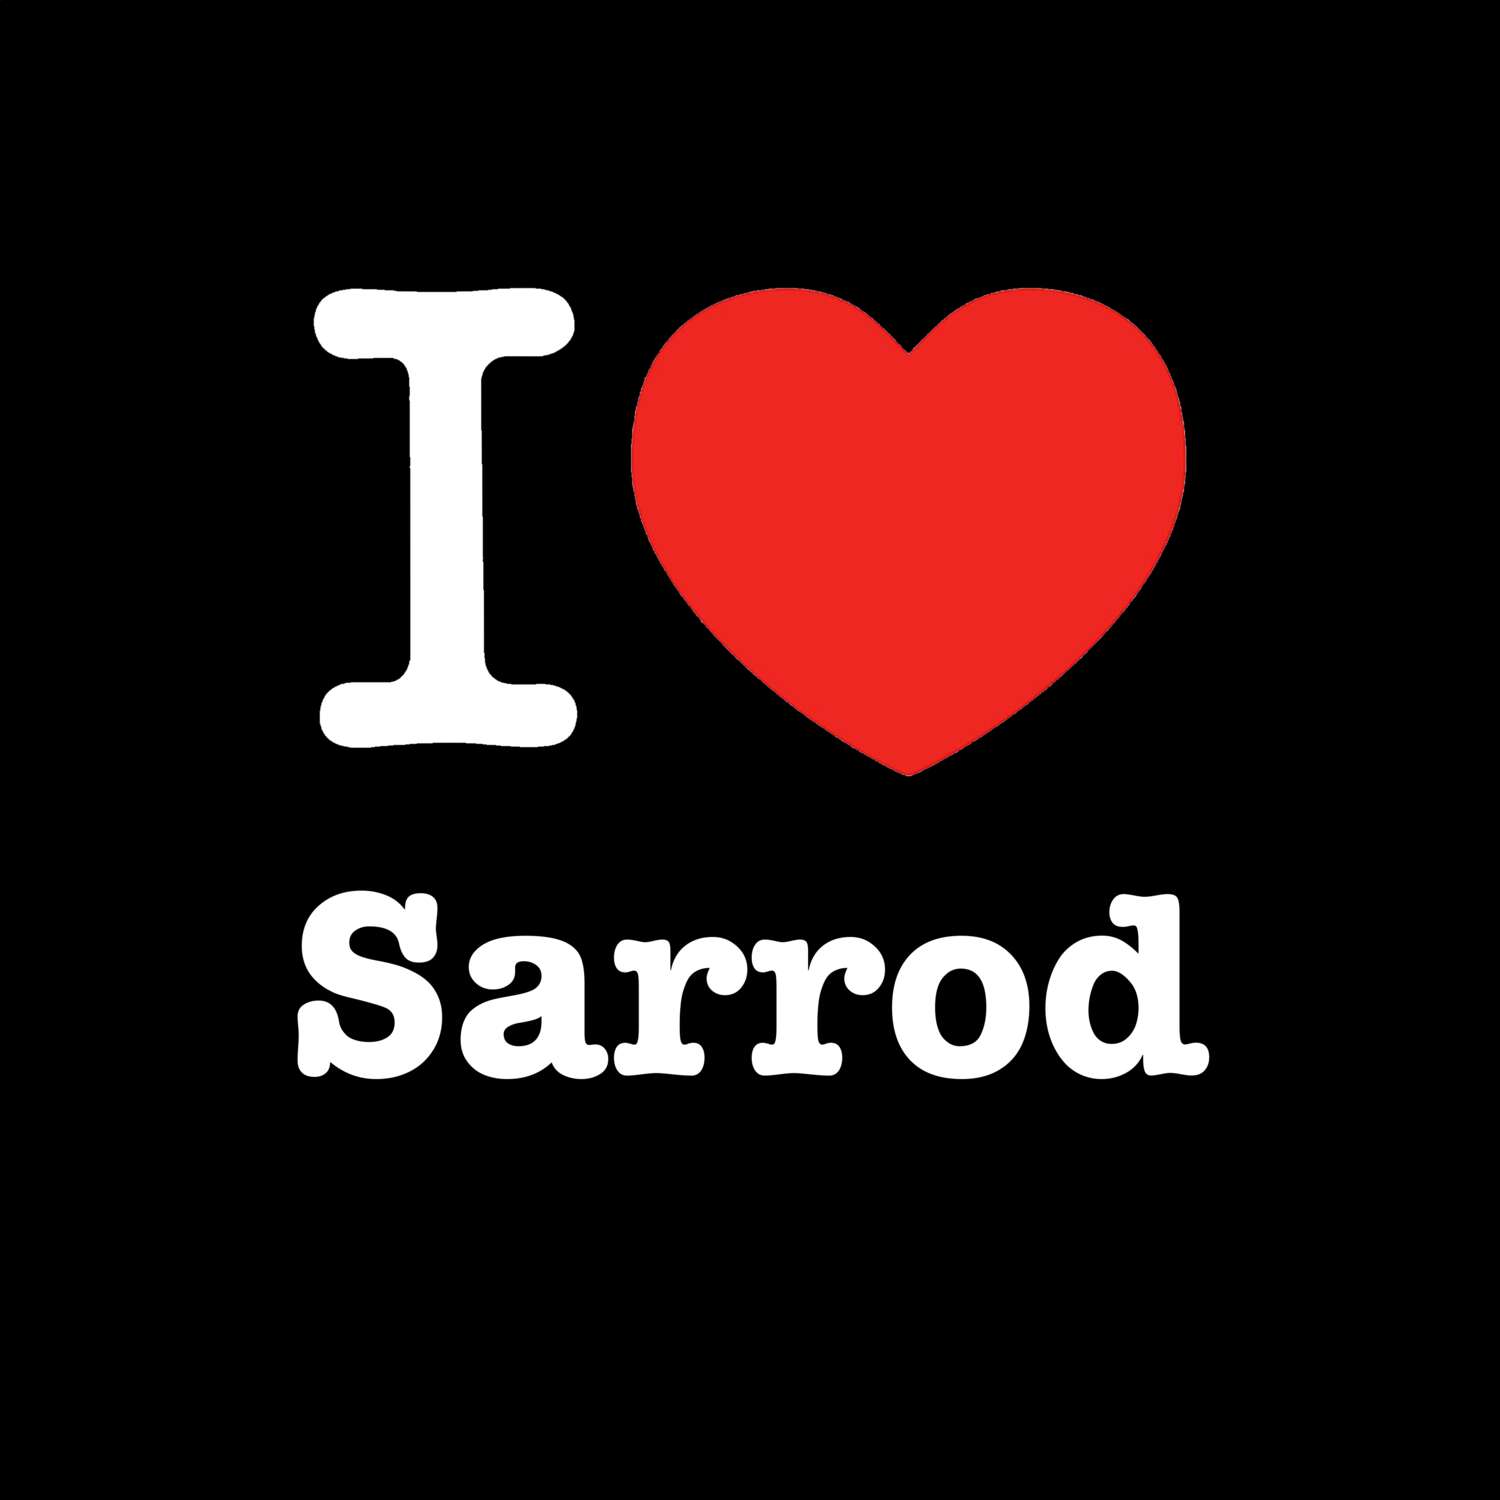 Sarrod T-Shirt »I love«